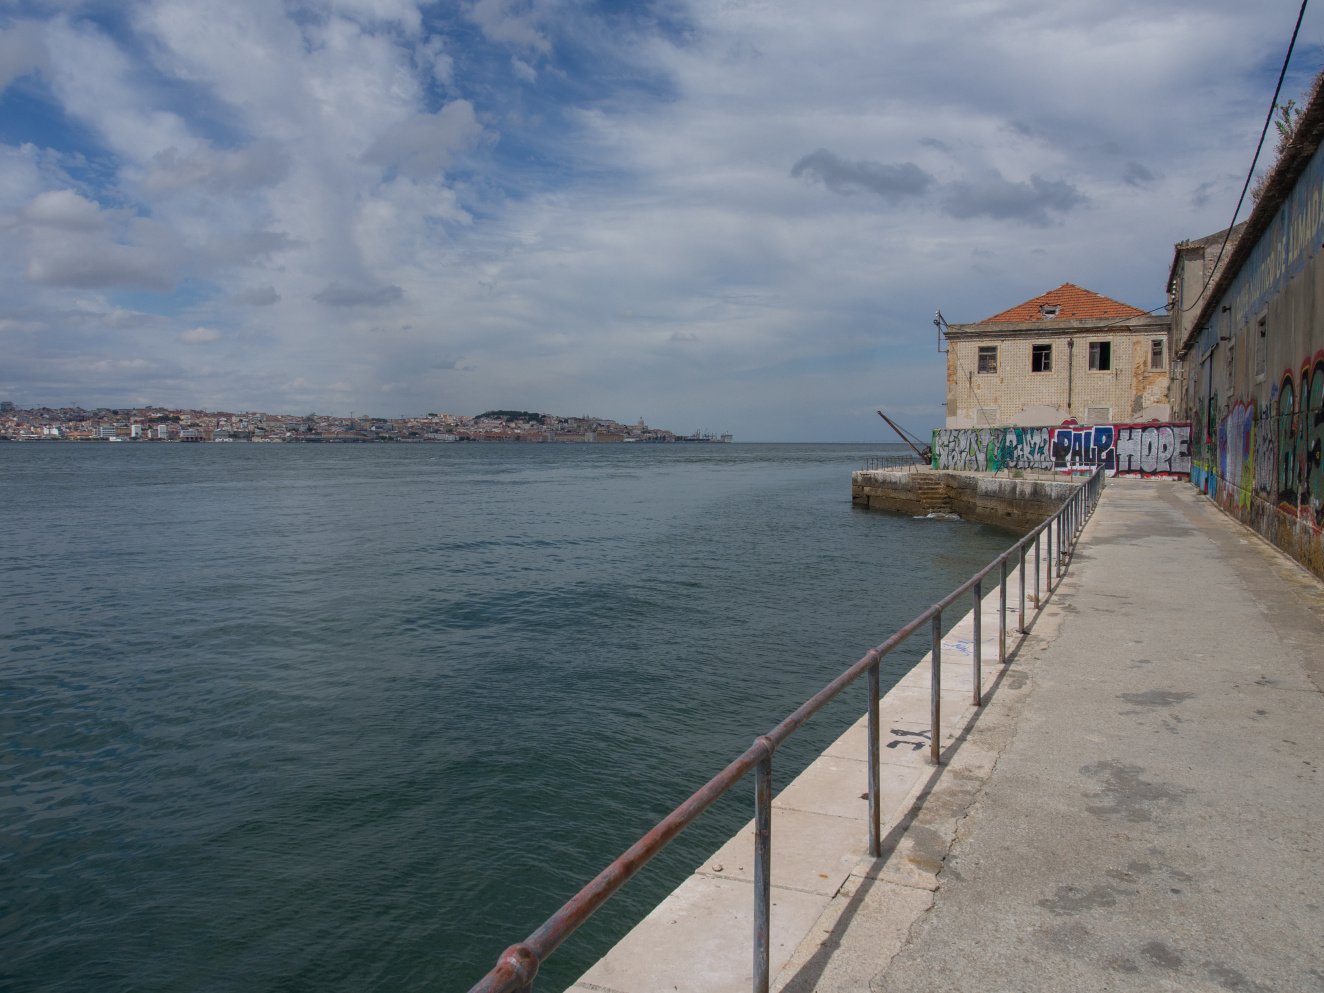 Der TEJO: ein "großes Wasser" zwischen Lissabon und den Alten Kai-Anlagen auf dem gegenüberliegenden Ufer
Foto: Wally Raths
